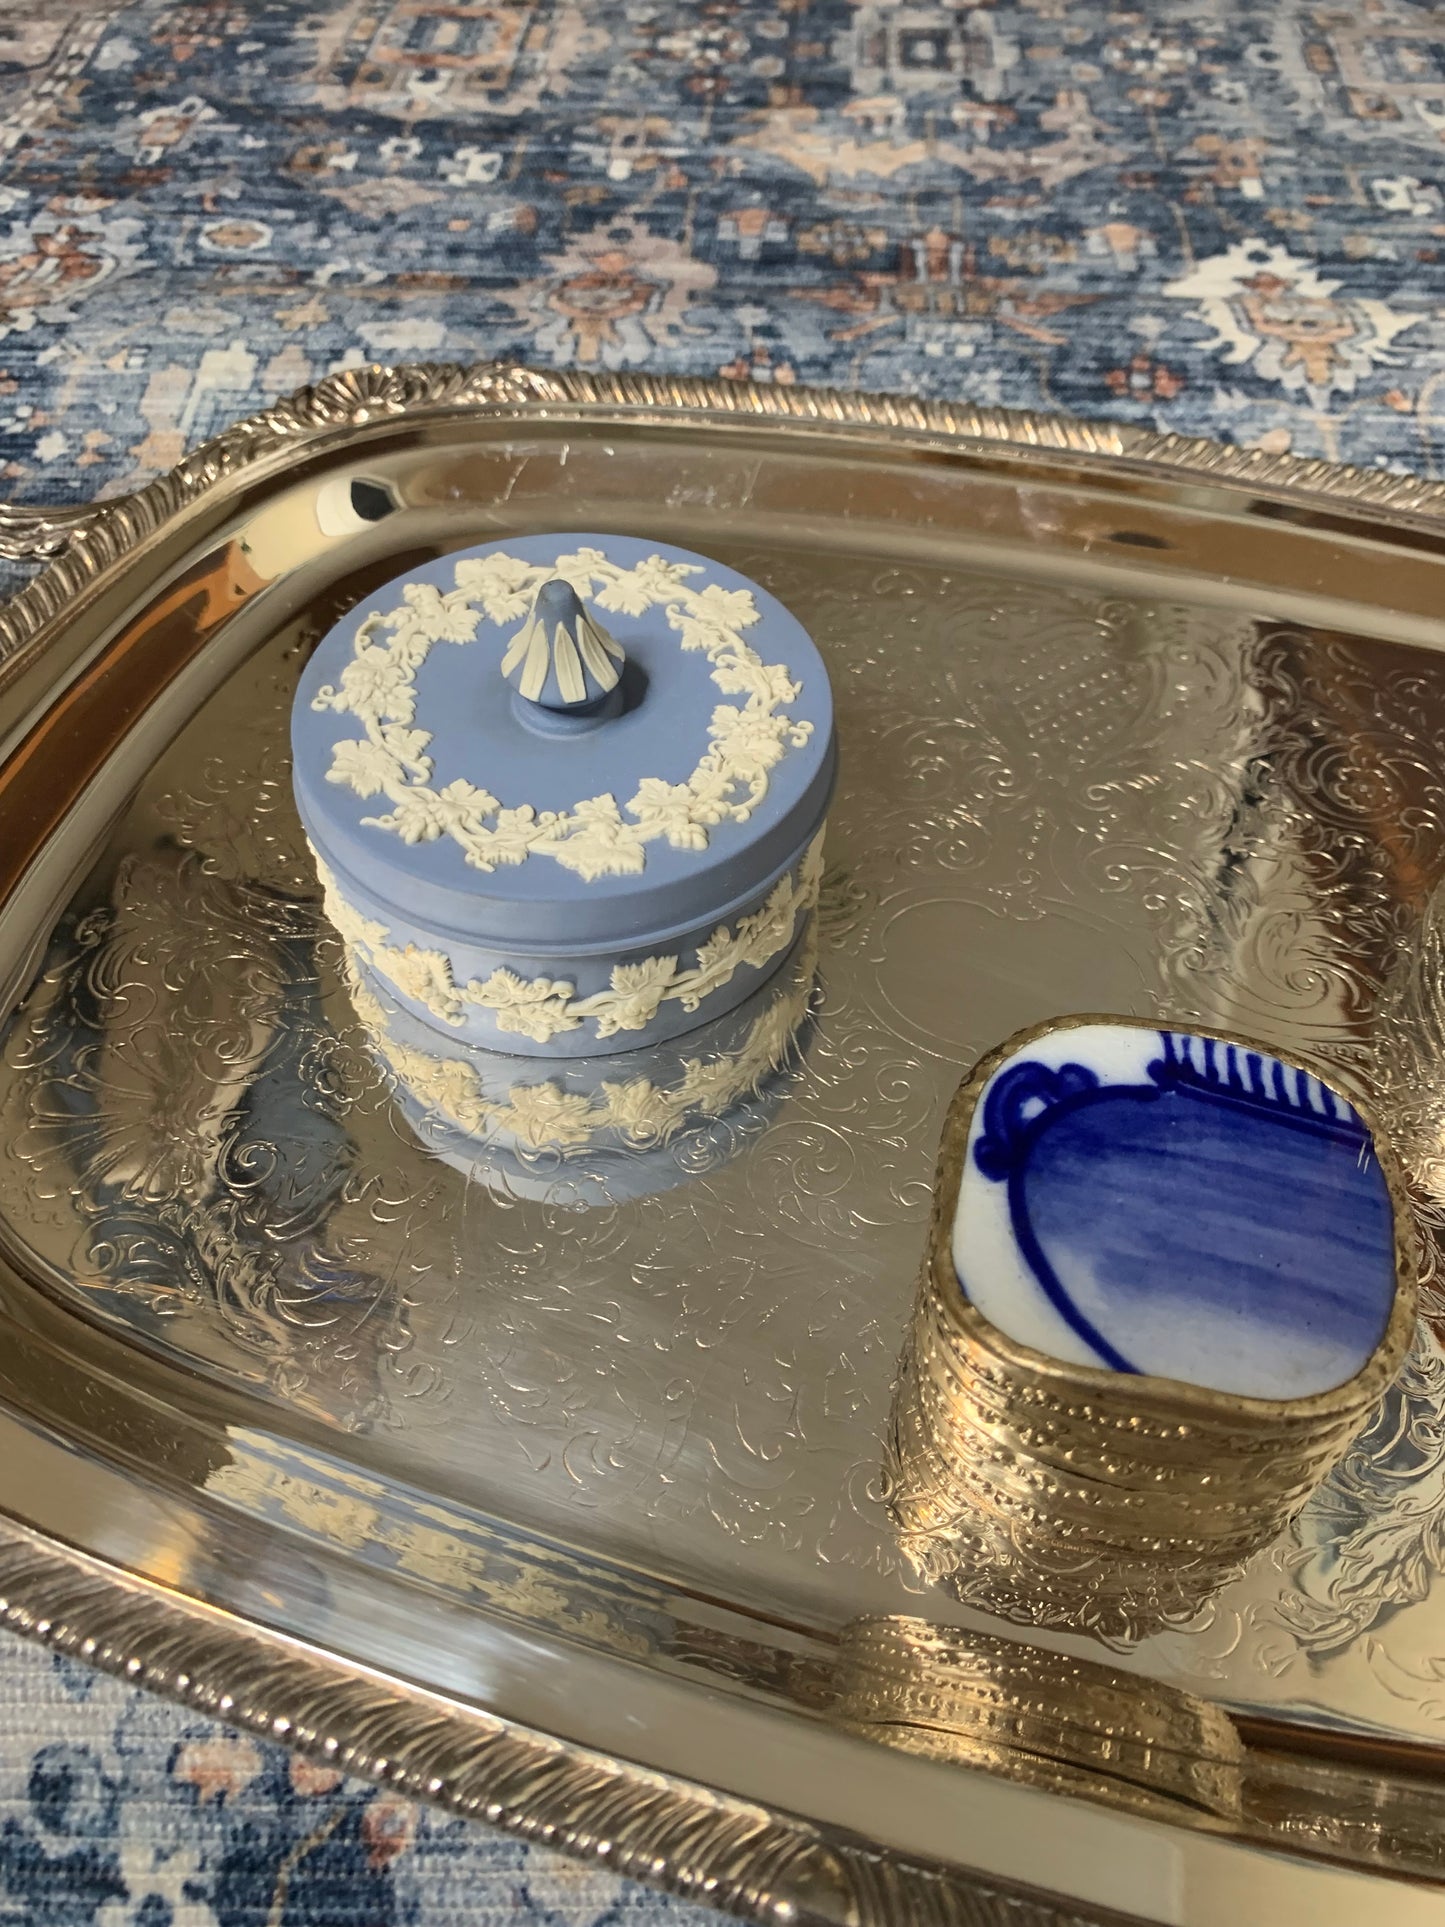 Beautiful Wedgwood Jasperware blue and white round trinket box!